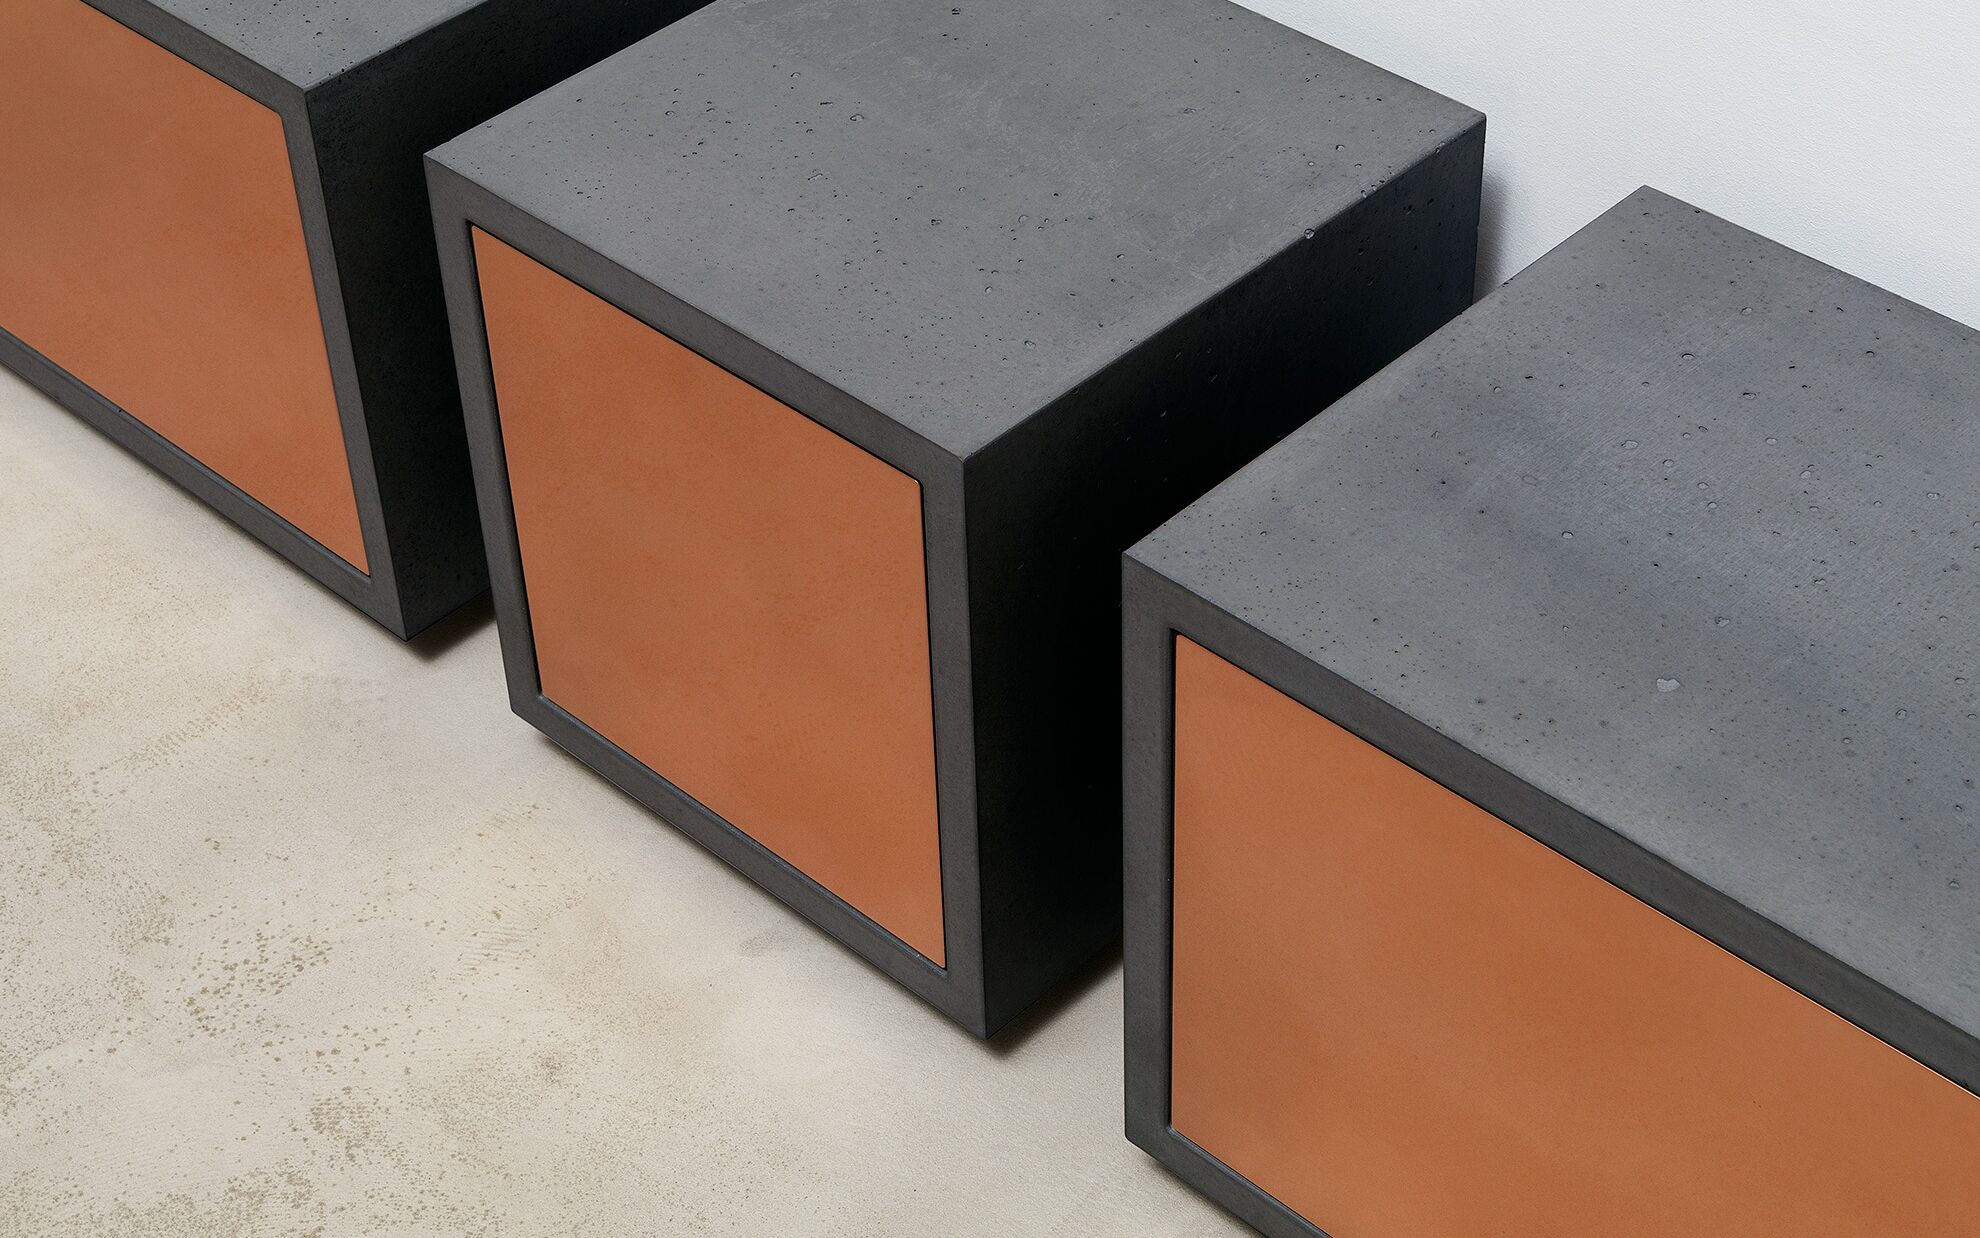 Betonmöbel Lowboard mit Kupfer-Front, Schubkasten, Serie Detail